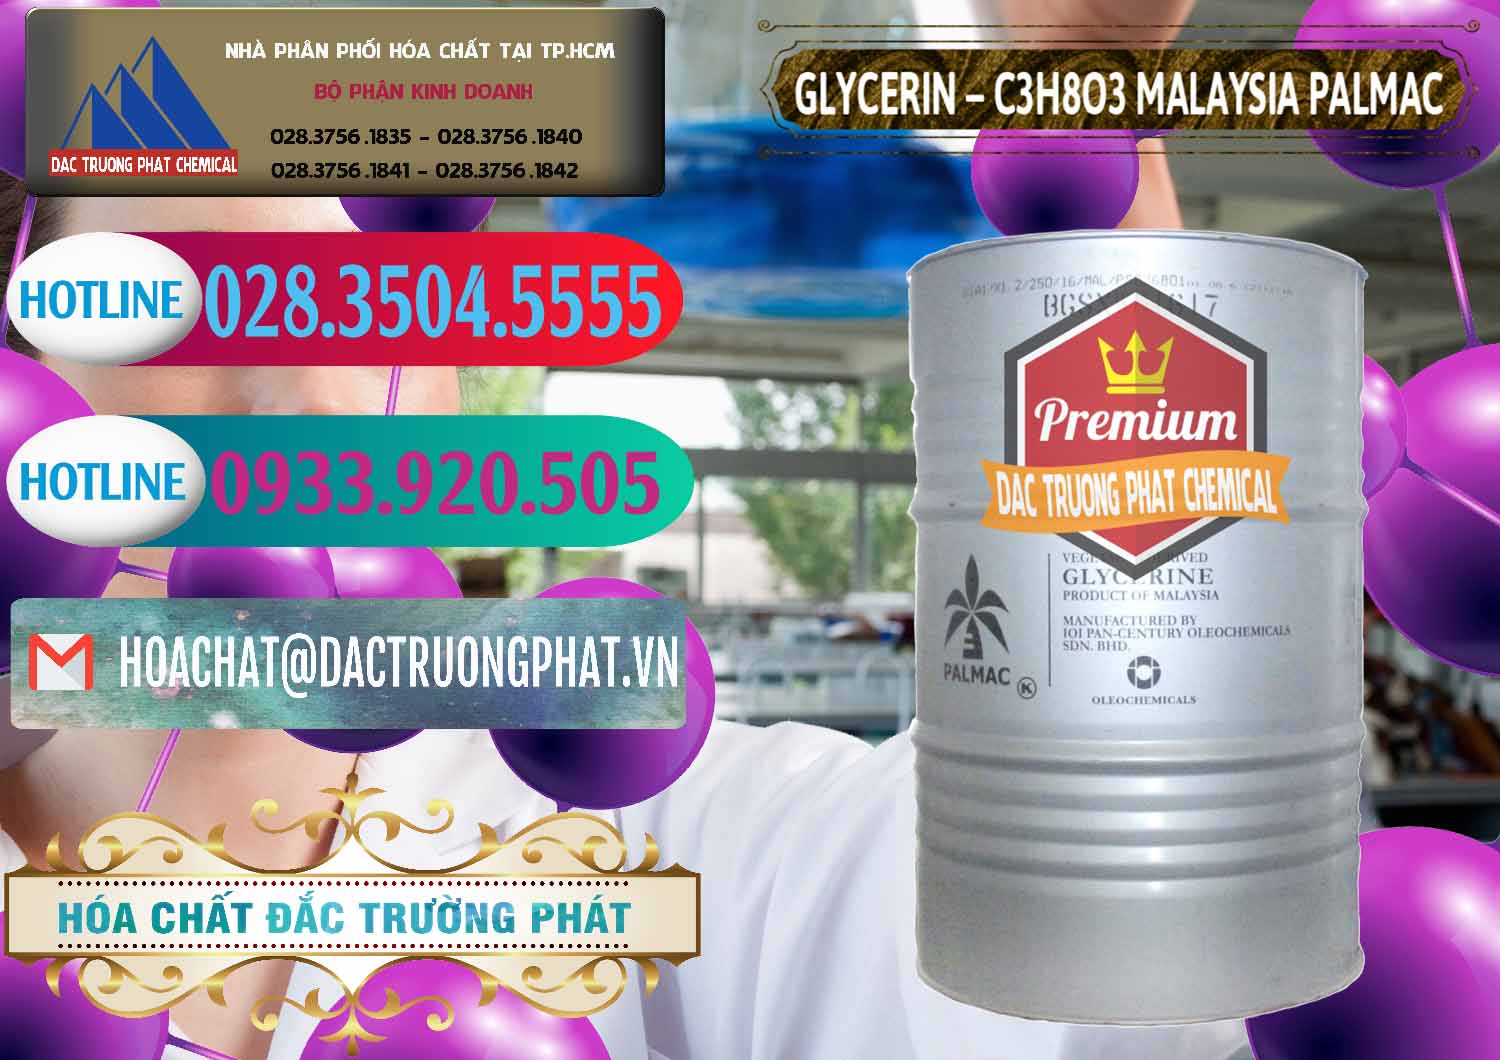 Công ty bán ( phân phối ) Glycerin – C3H8O3 99.7% Malaysia Palmac - 0067 - Nơi chuyên kinh doanh _ cung cấp hóa chất tại TP.HCM - truongphat.vn